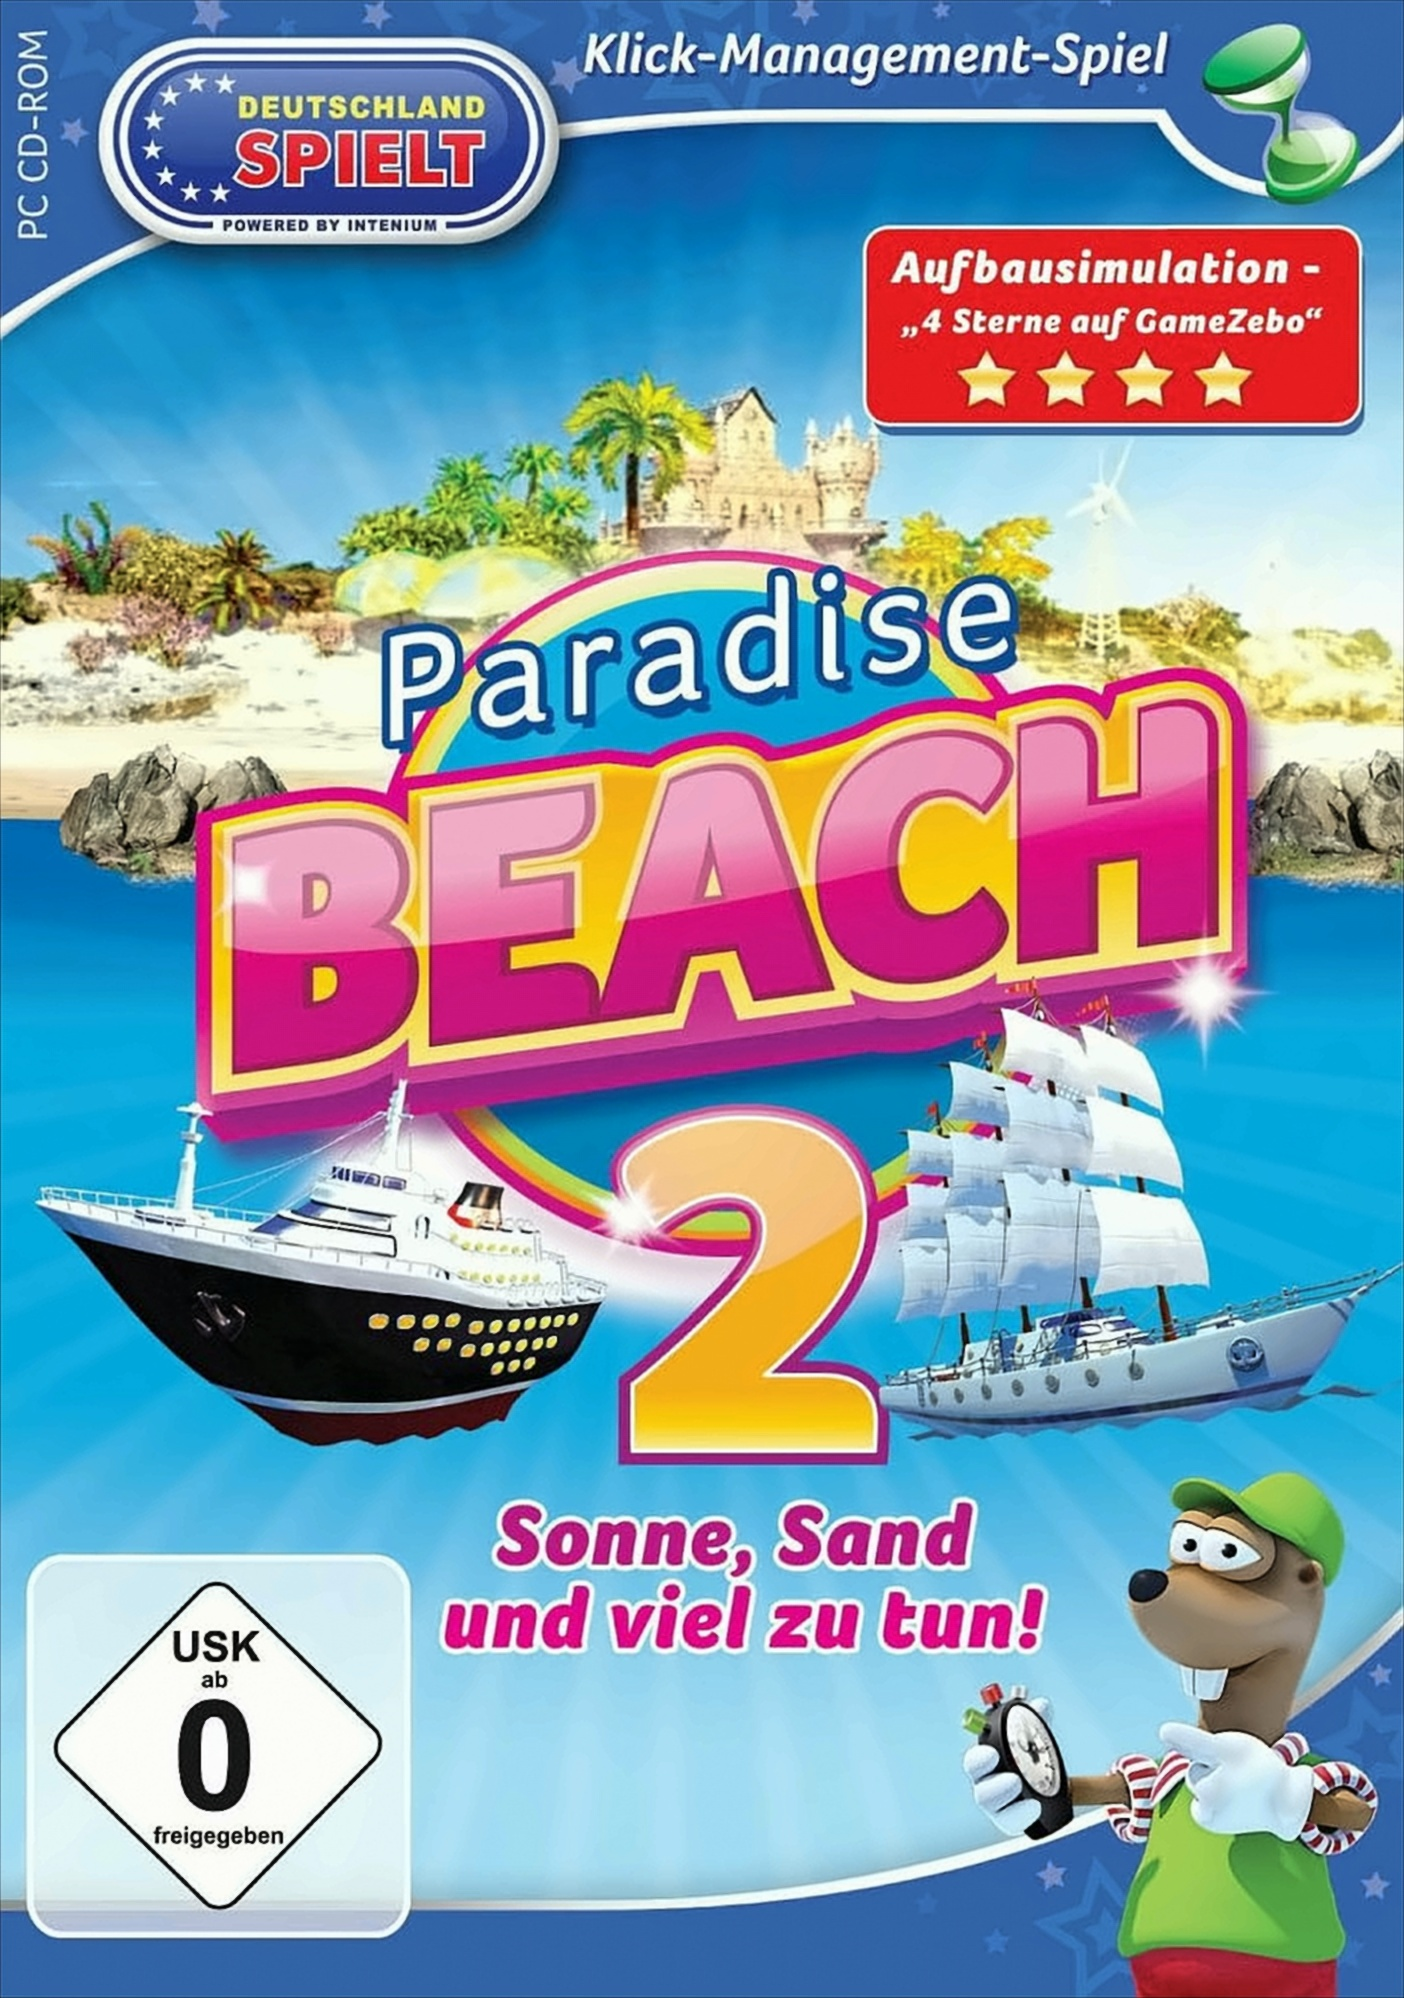 Paradise Beach 2 - Sonne, viel - tun! Sand zu und [PC